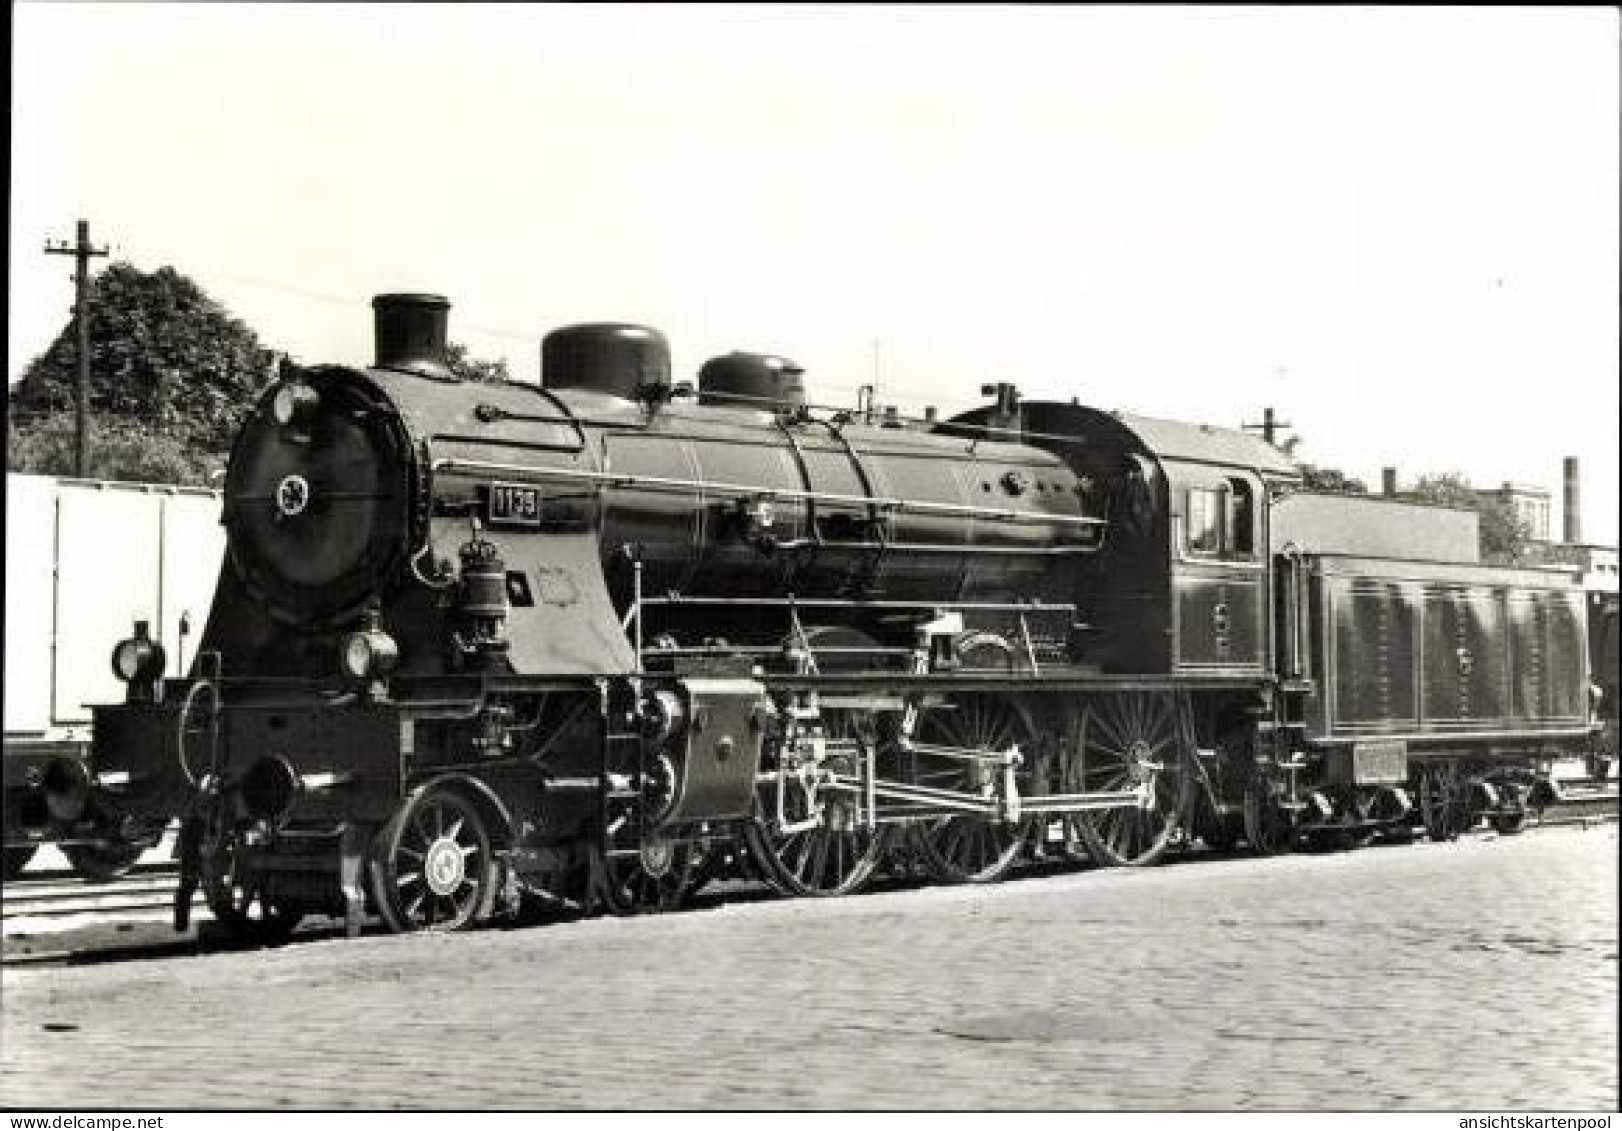 9 alte CPA Dampflokomotiven Serie 1, Länderbauart, im passenden Heft, diverse Ansichten